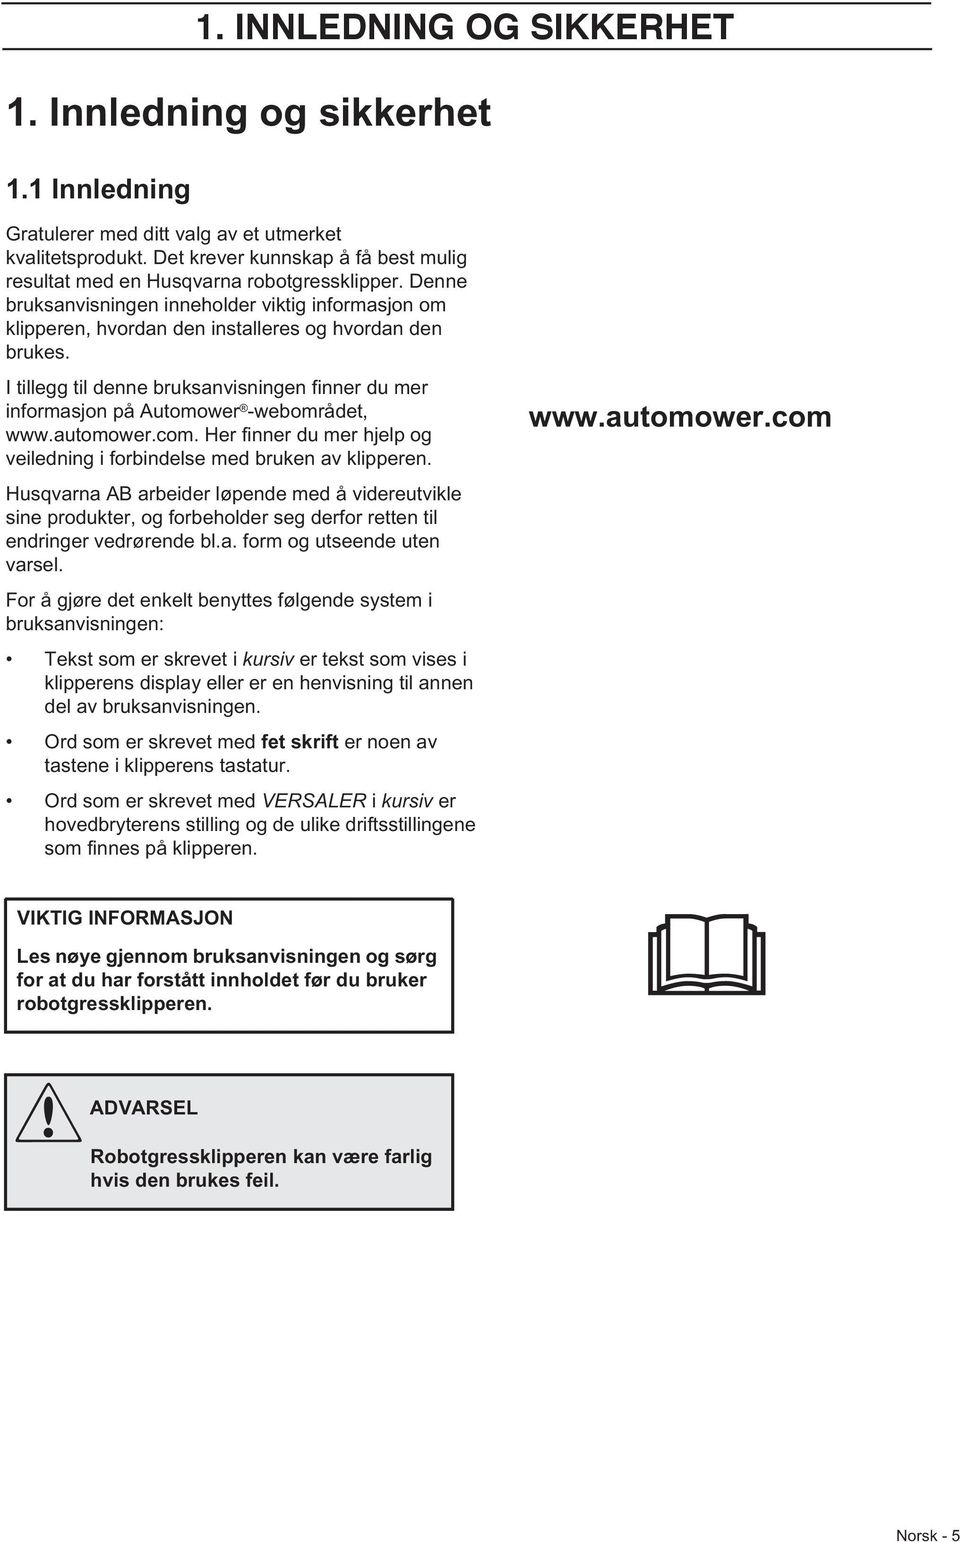 I tillegg til denne bruksanvisningen finner du mer informasjon på Automower -webområdet, www.automower.com. Her finner du mer hjelp og veiledning i forbindelse med bruken av klipperen.